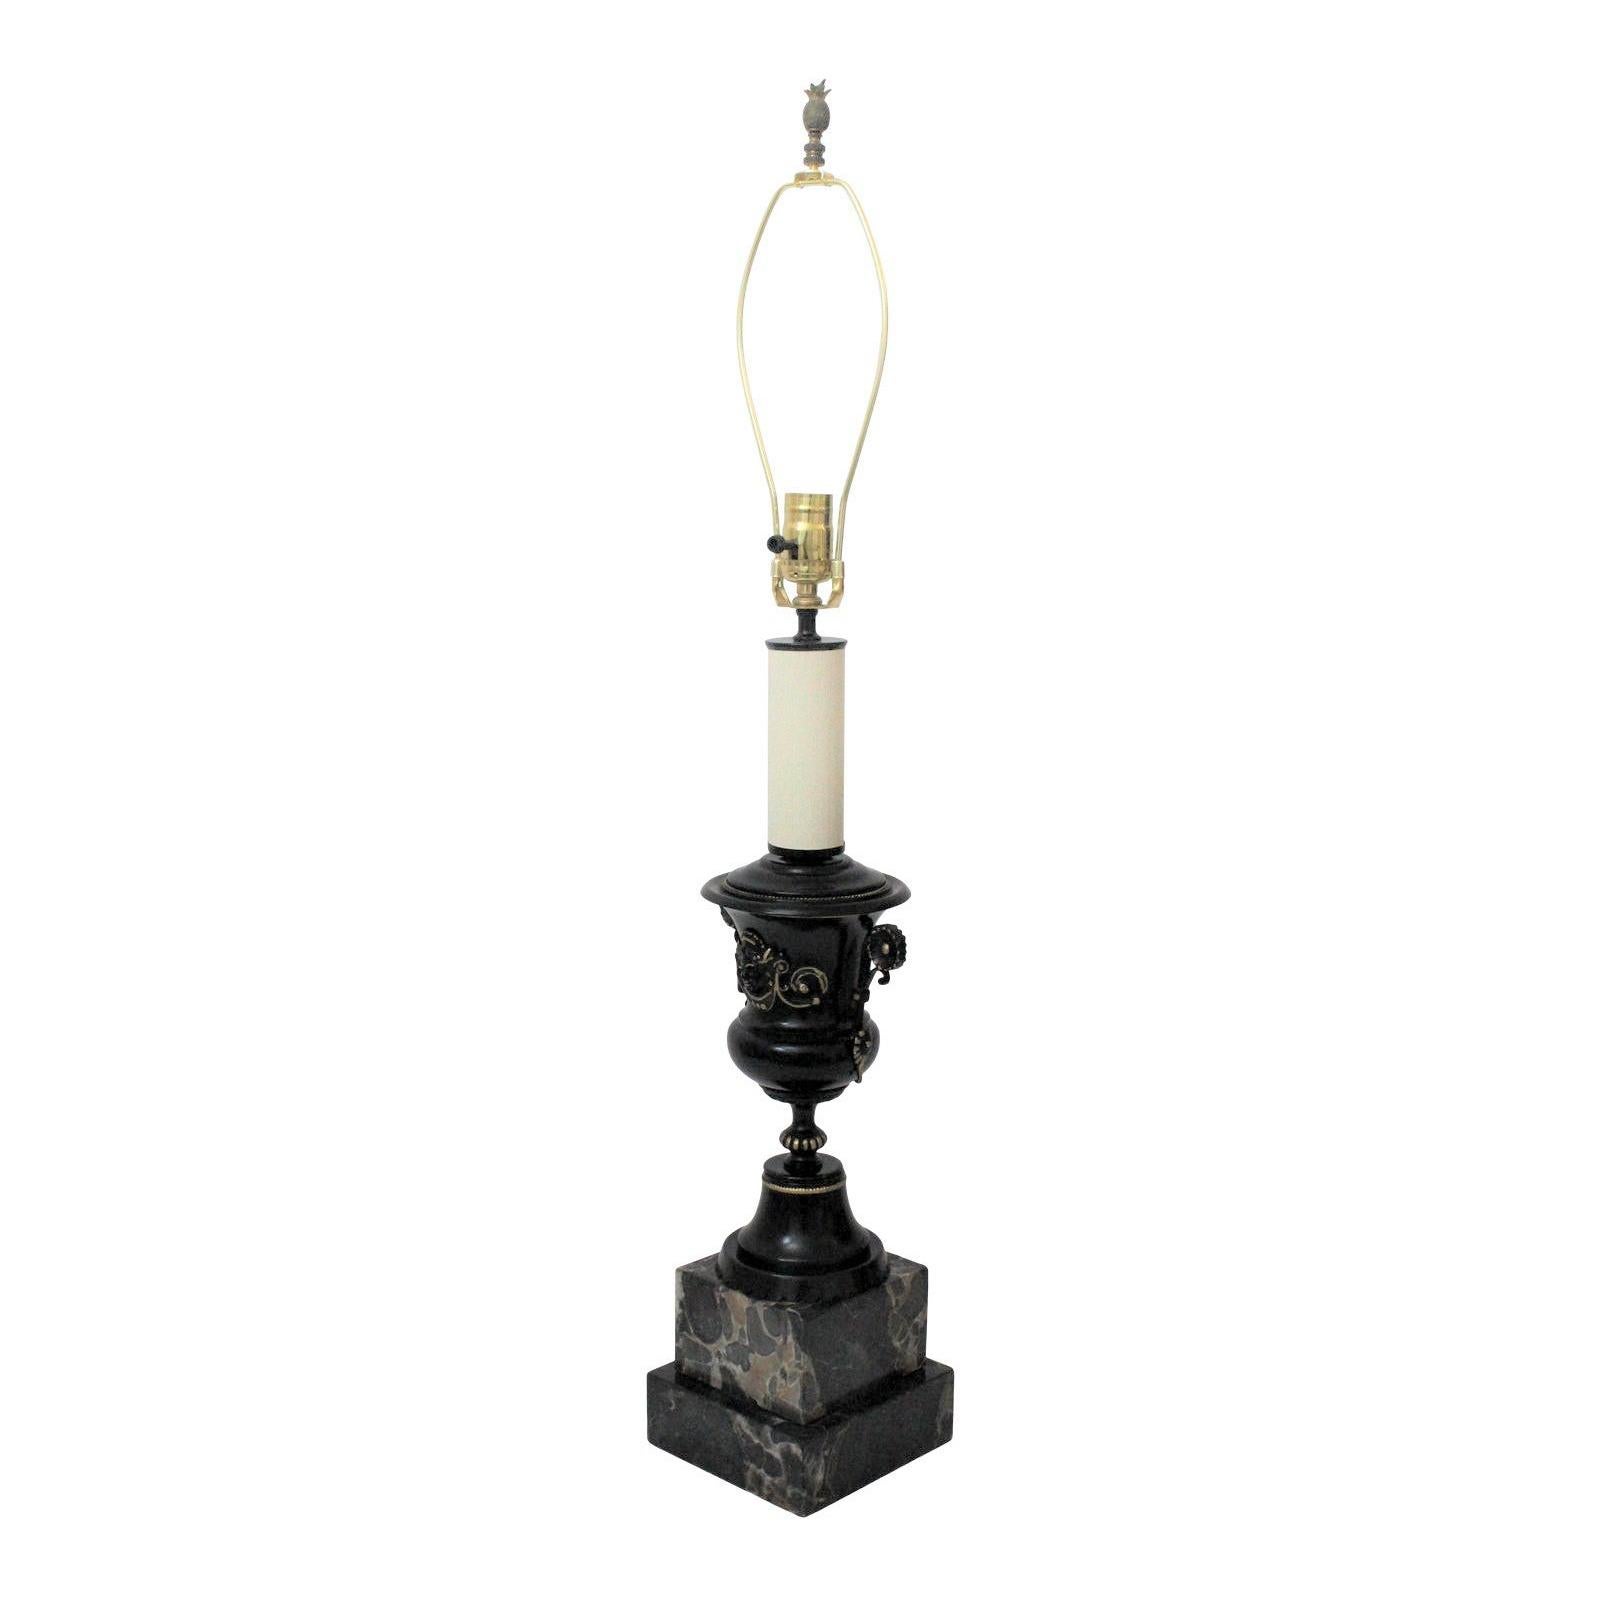 Renaissance Revival Table Lamp 